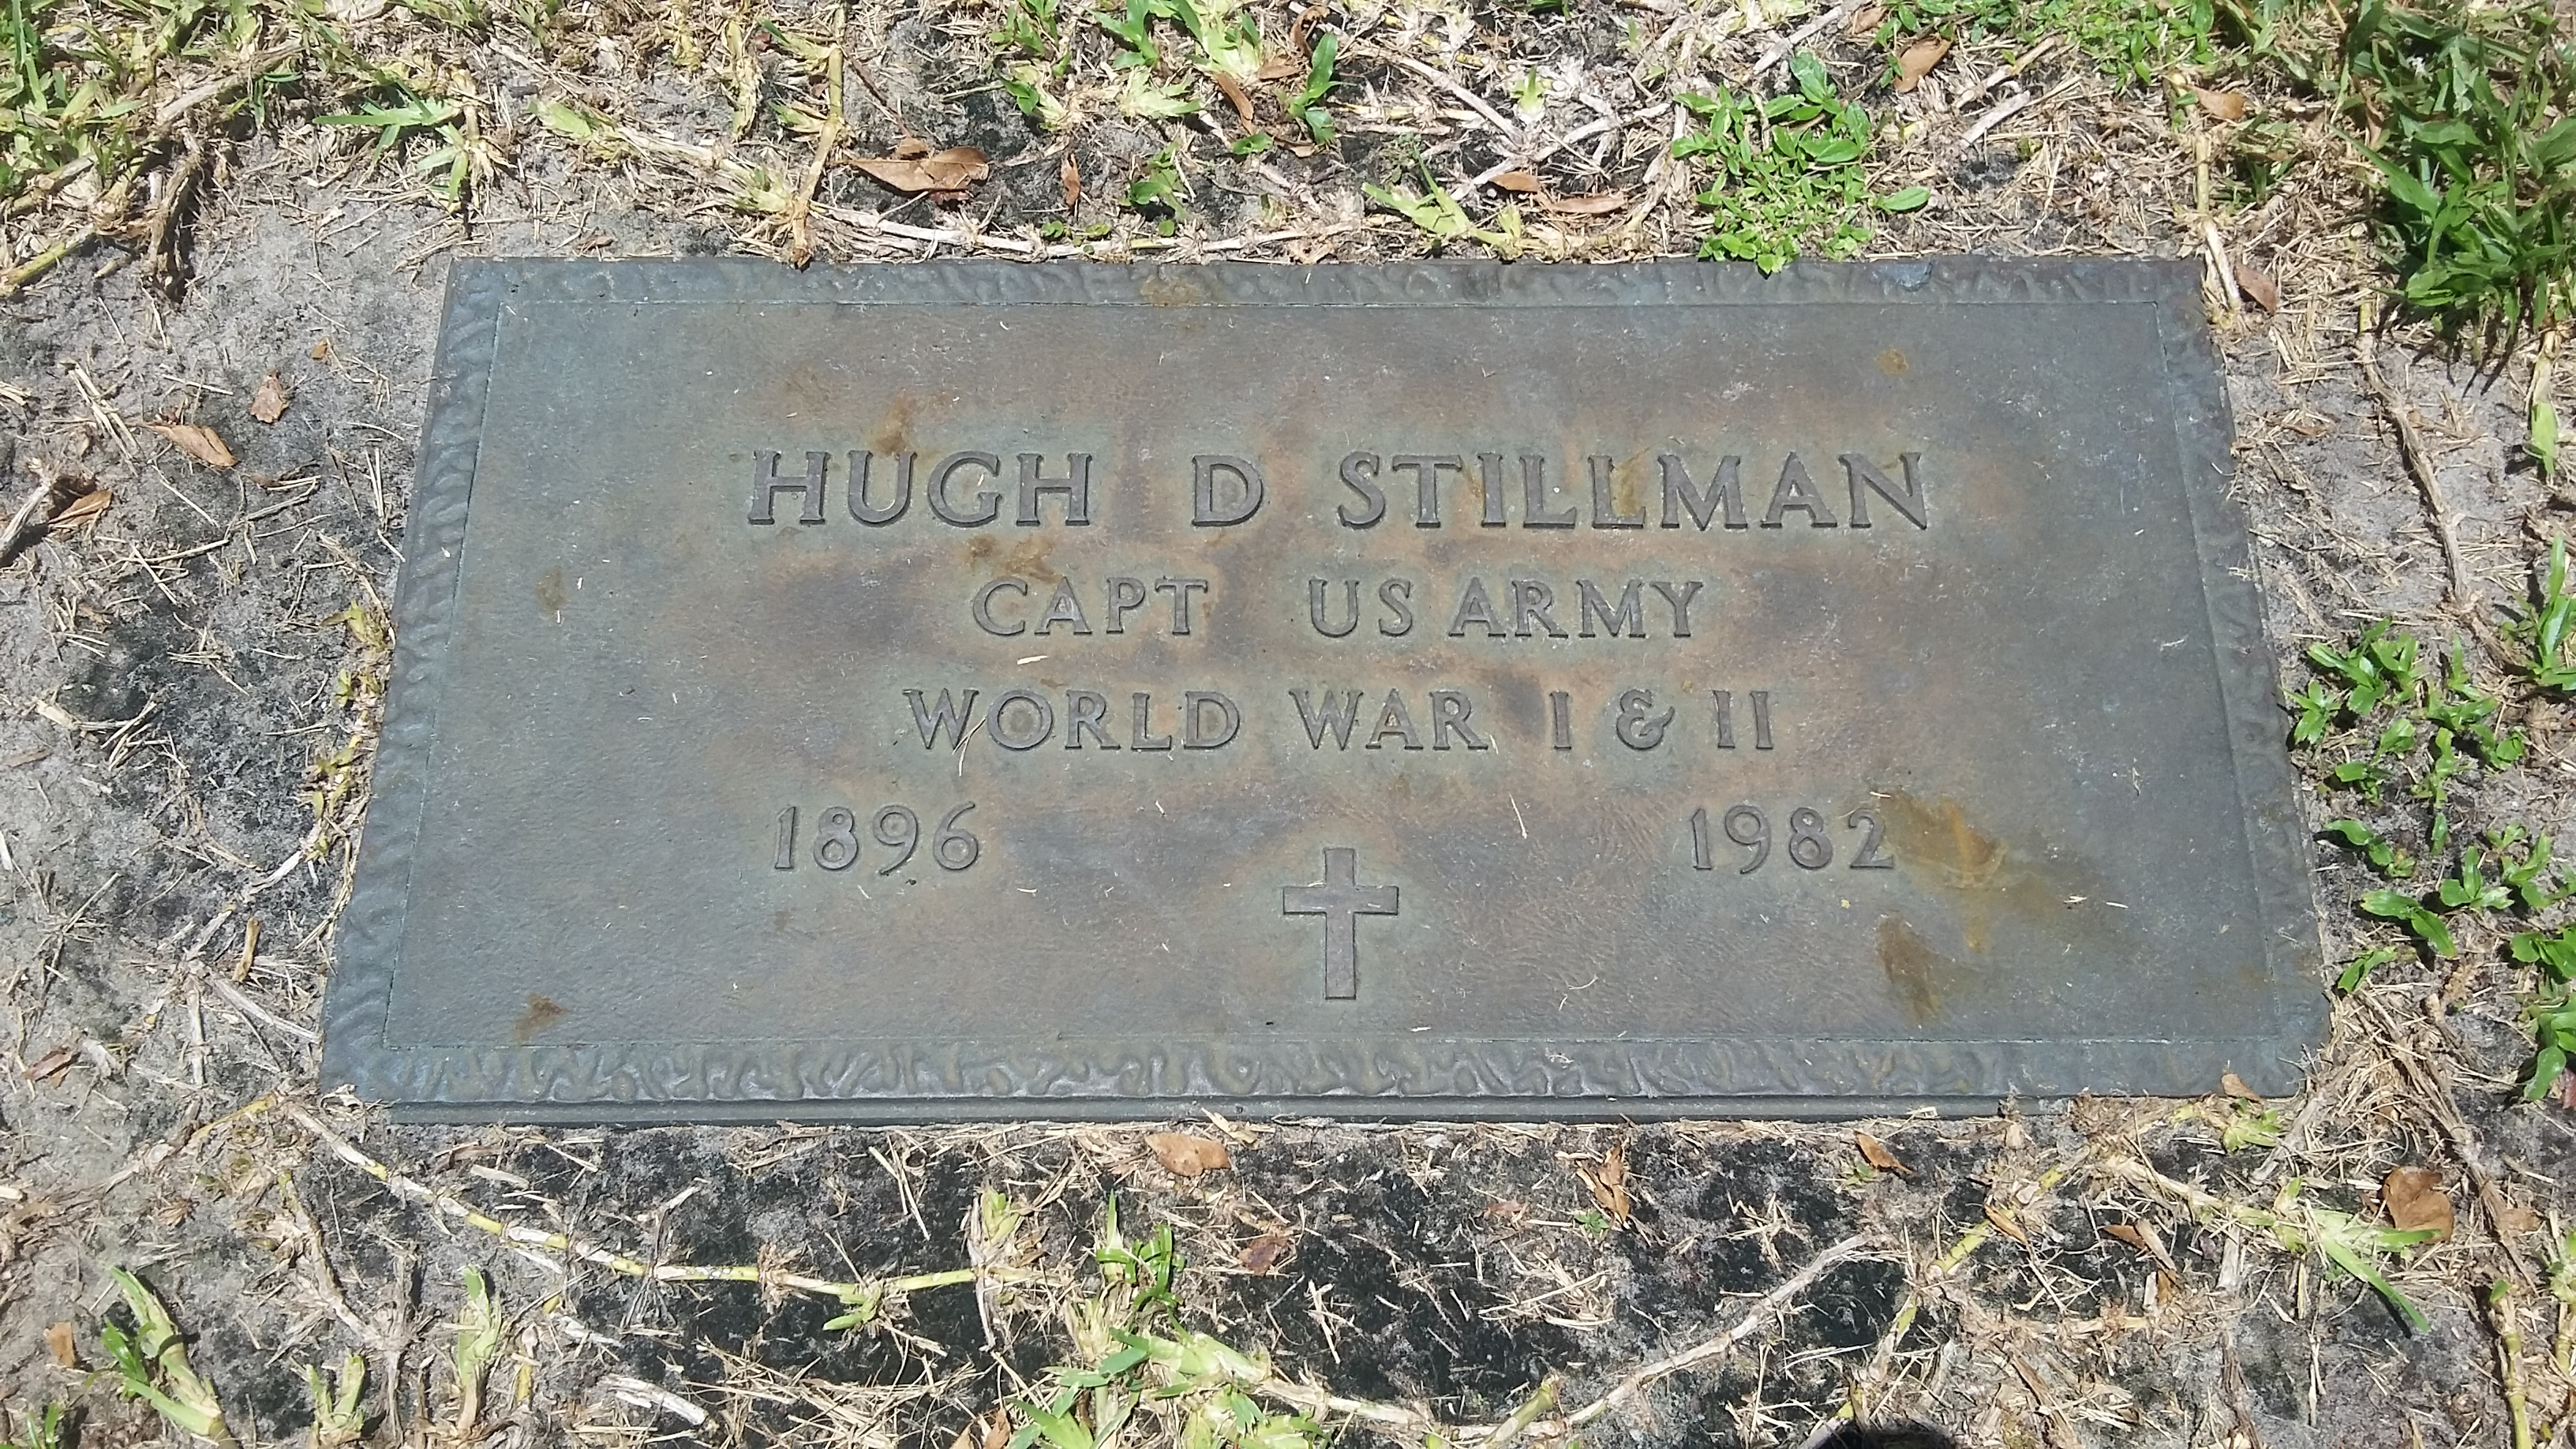 Hugh D Stillman